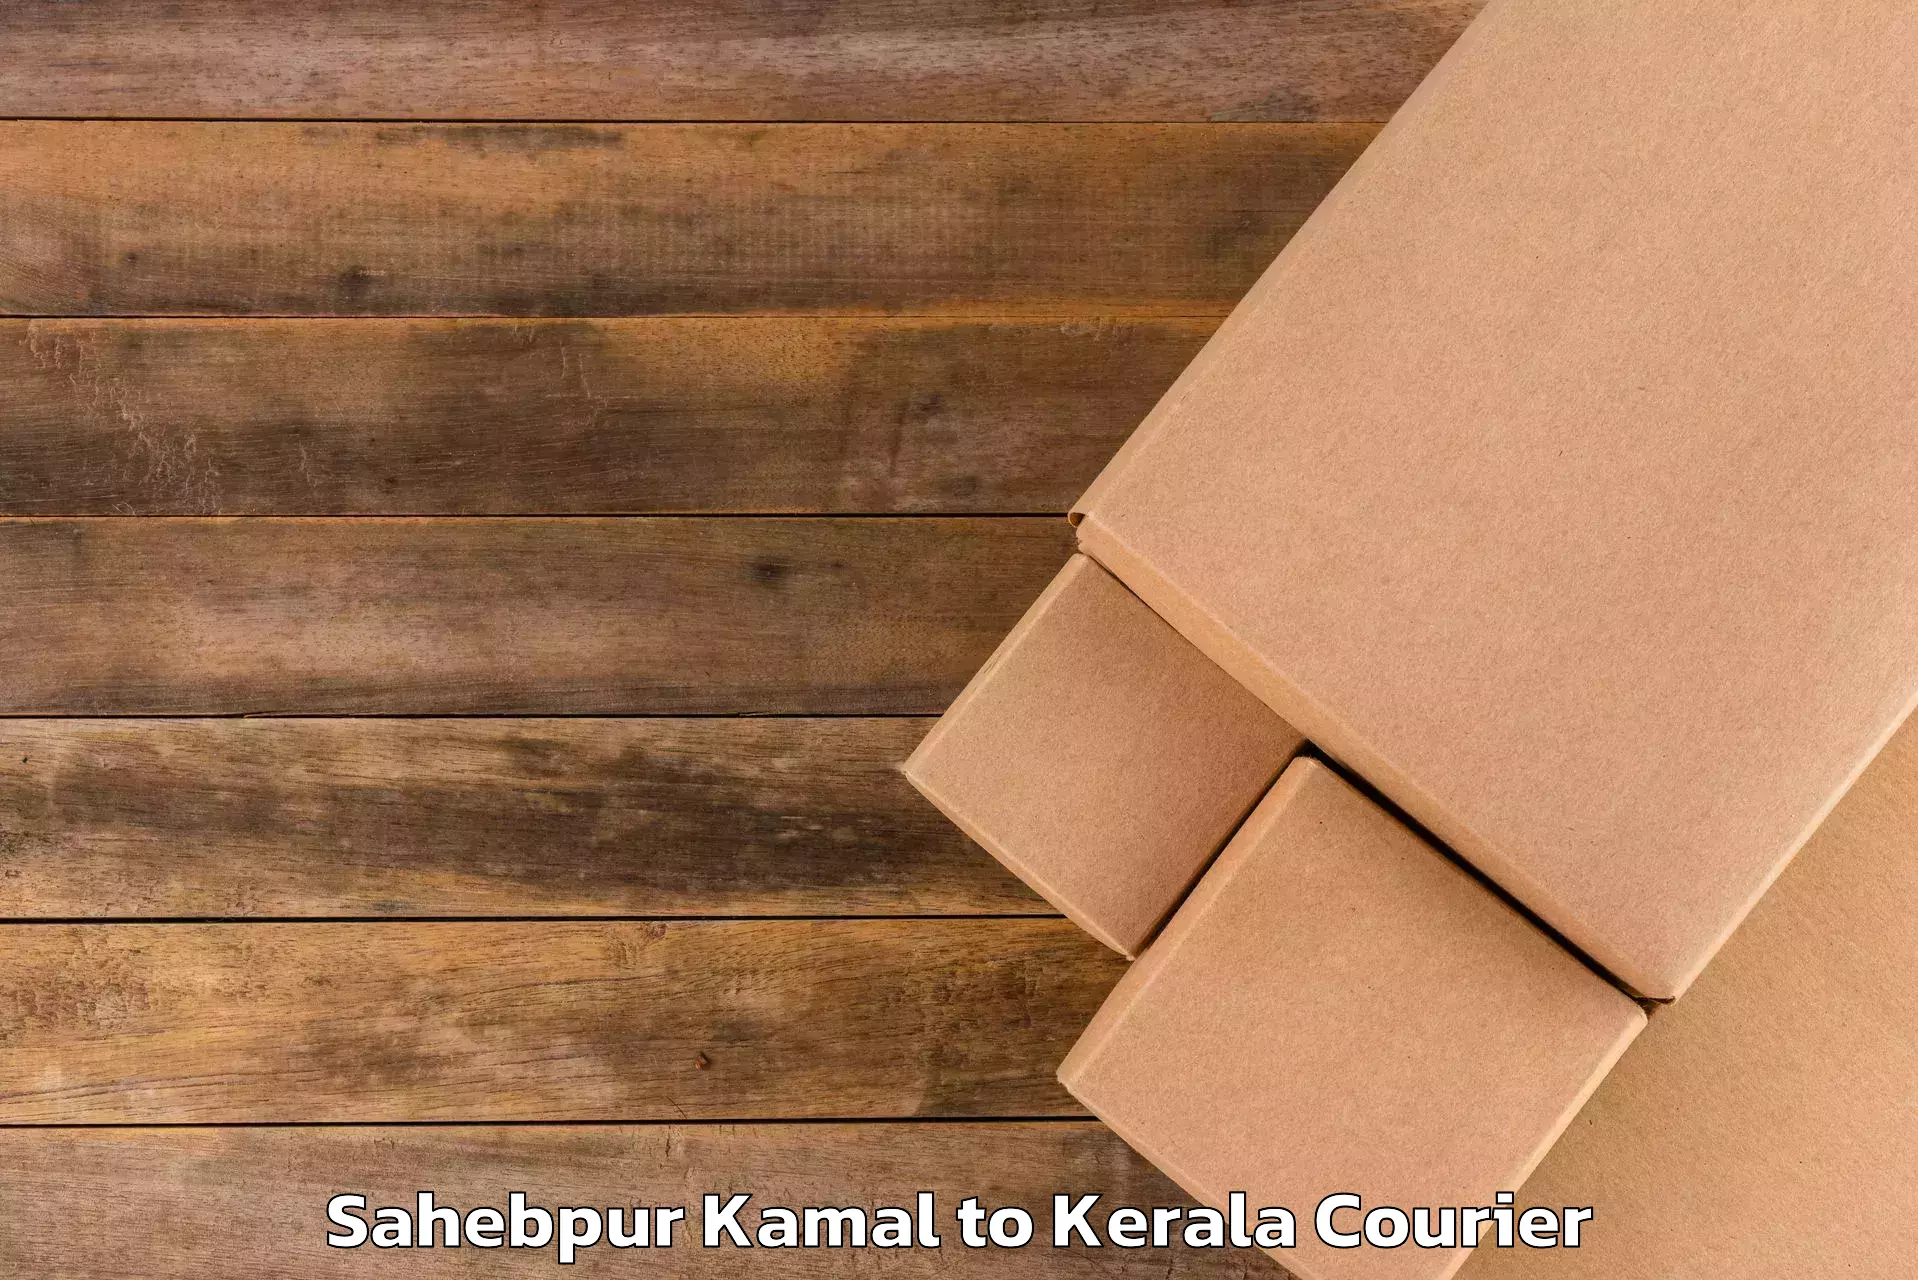 Luggage delivery logistics Sahebpur Kamal to Vadakkencherry